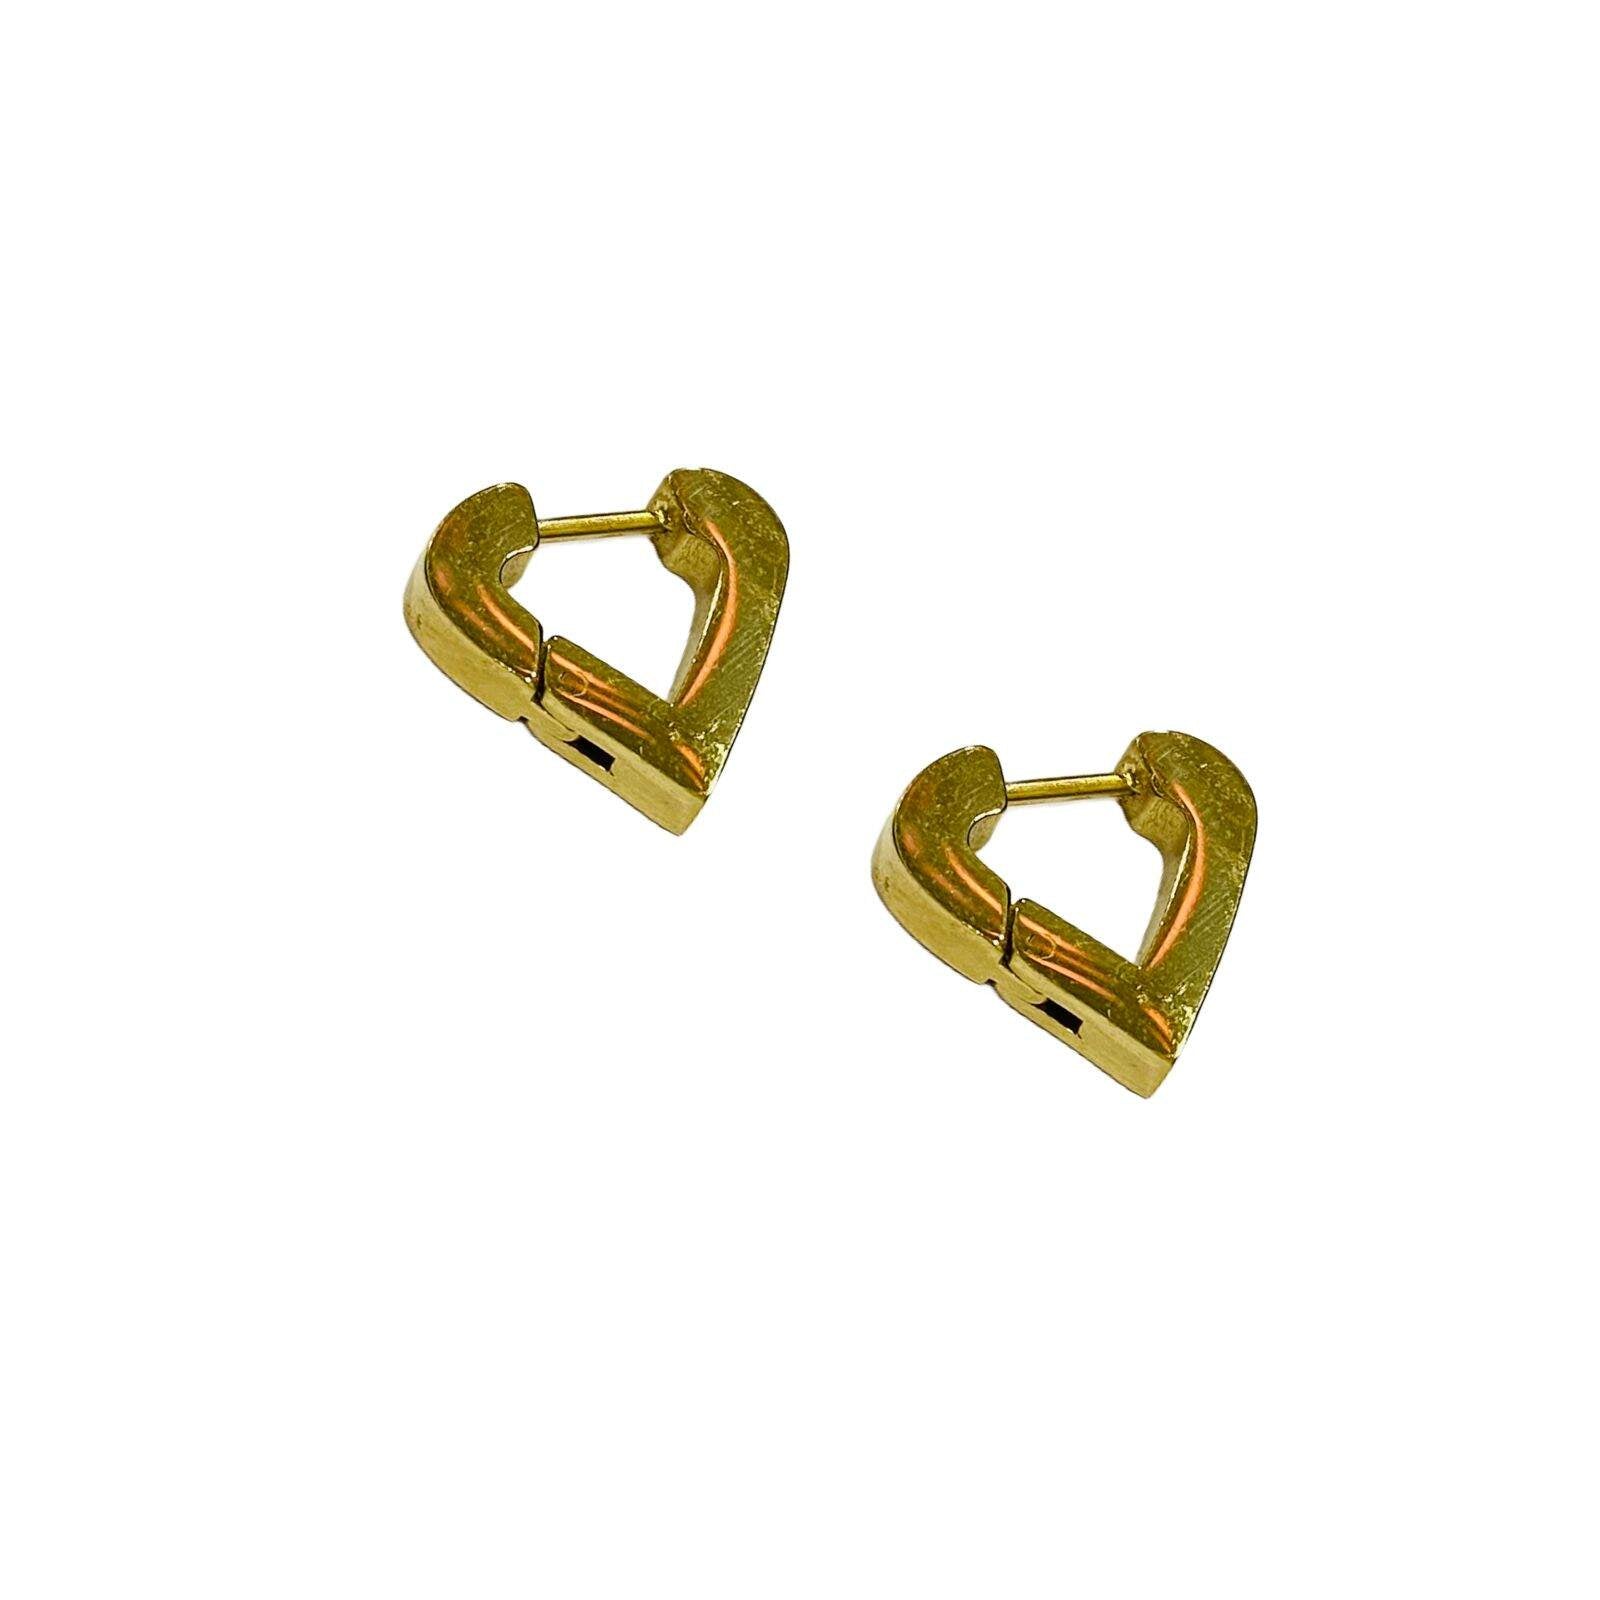 Bali Earrings | Gold Plated Hoop Earrings for Women | Fashion Jewellery